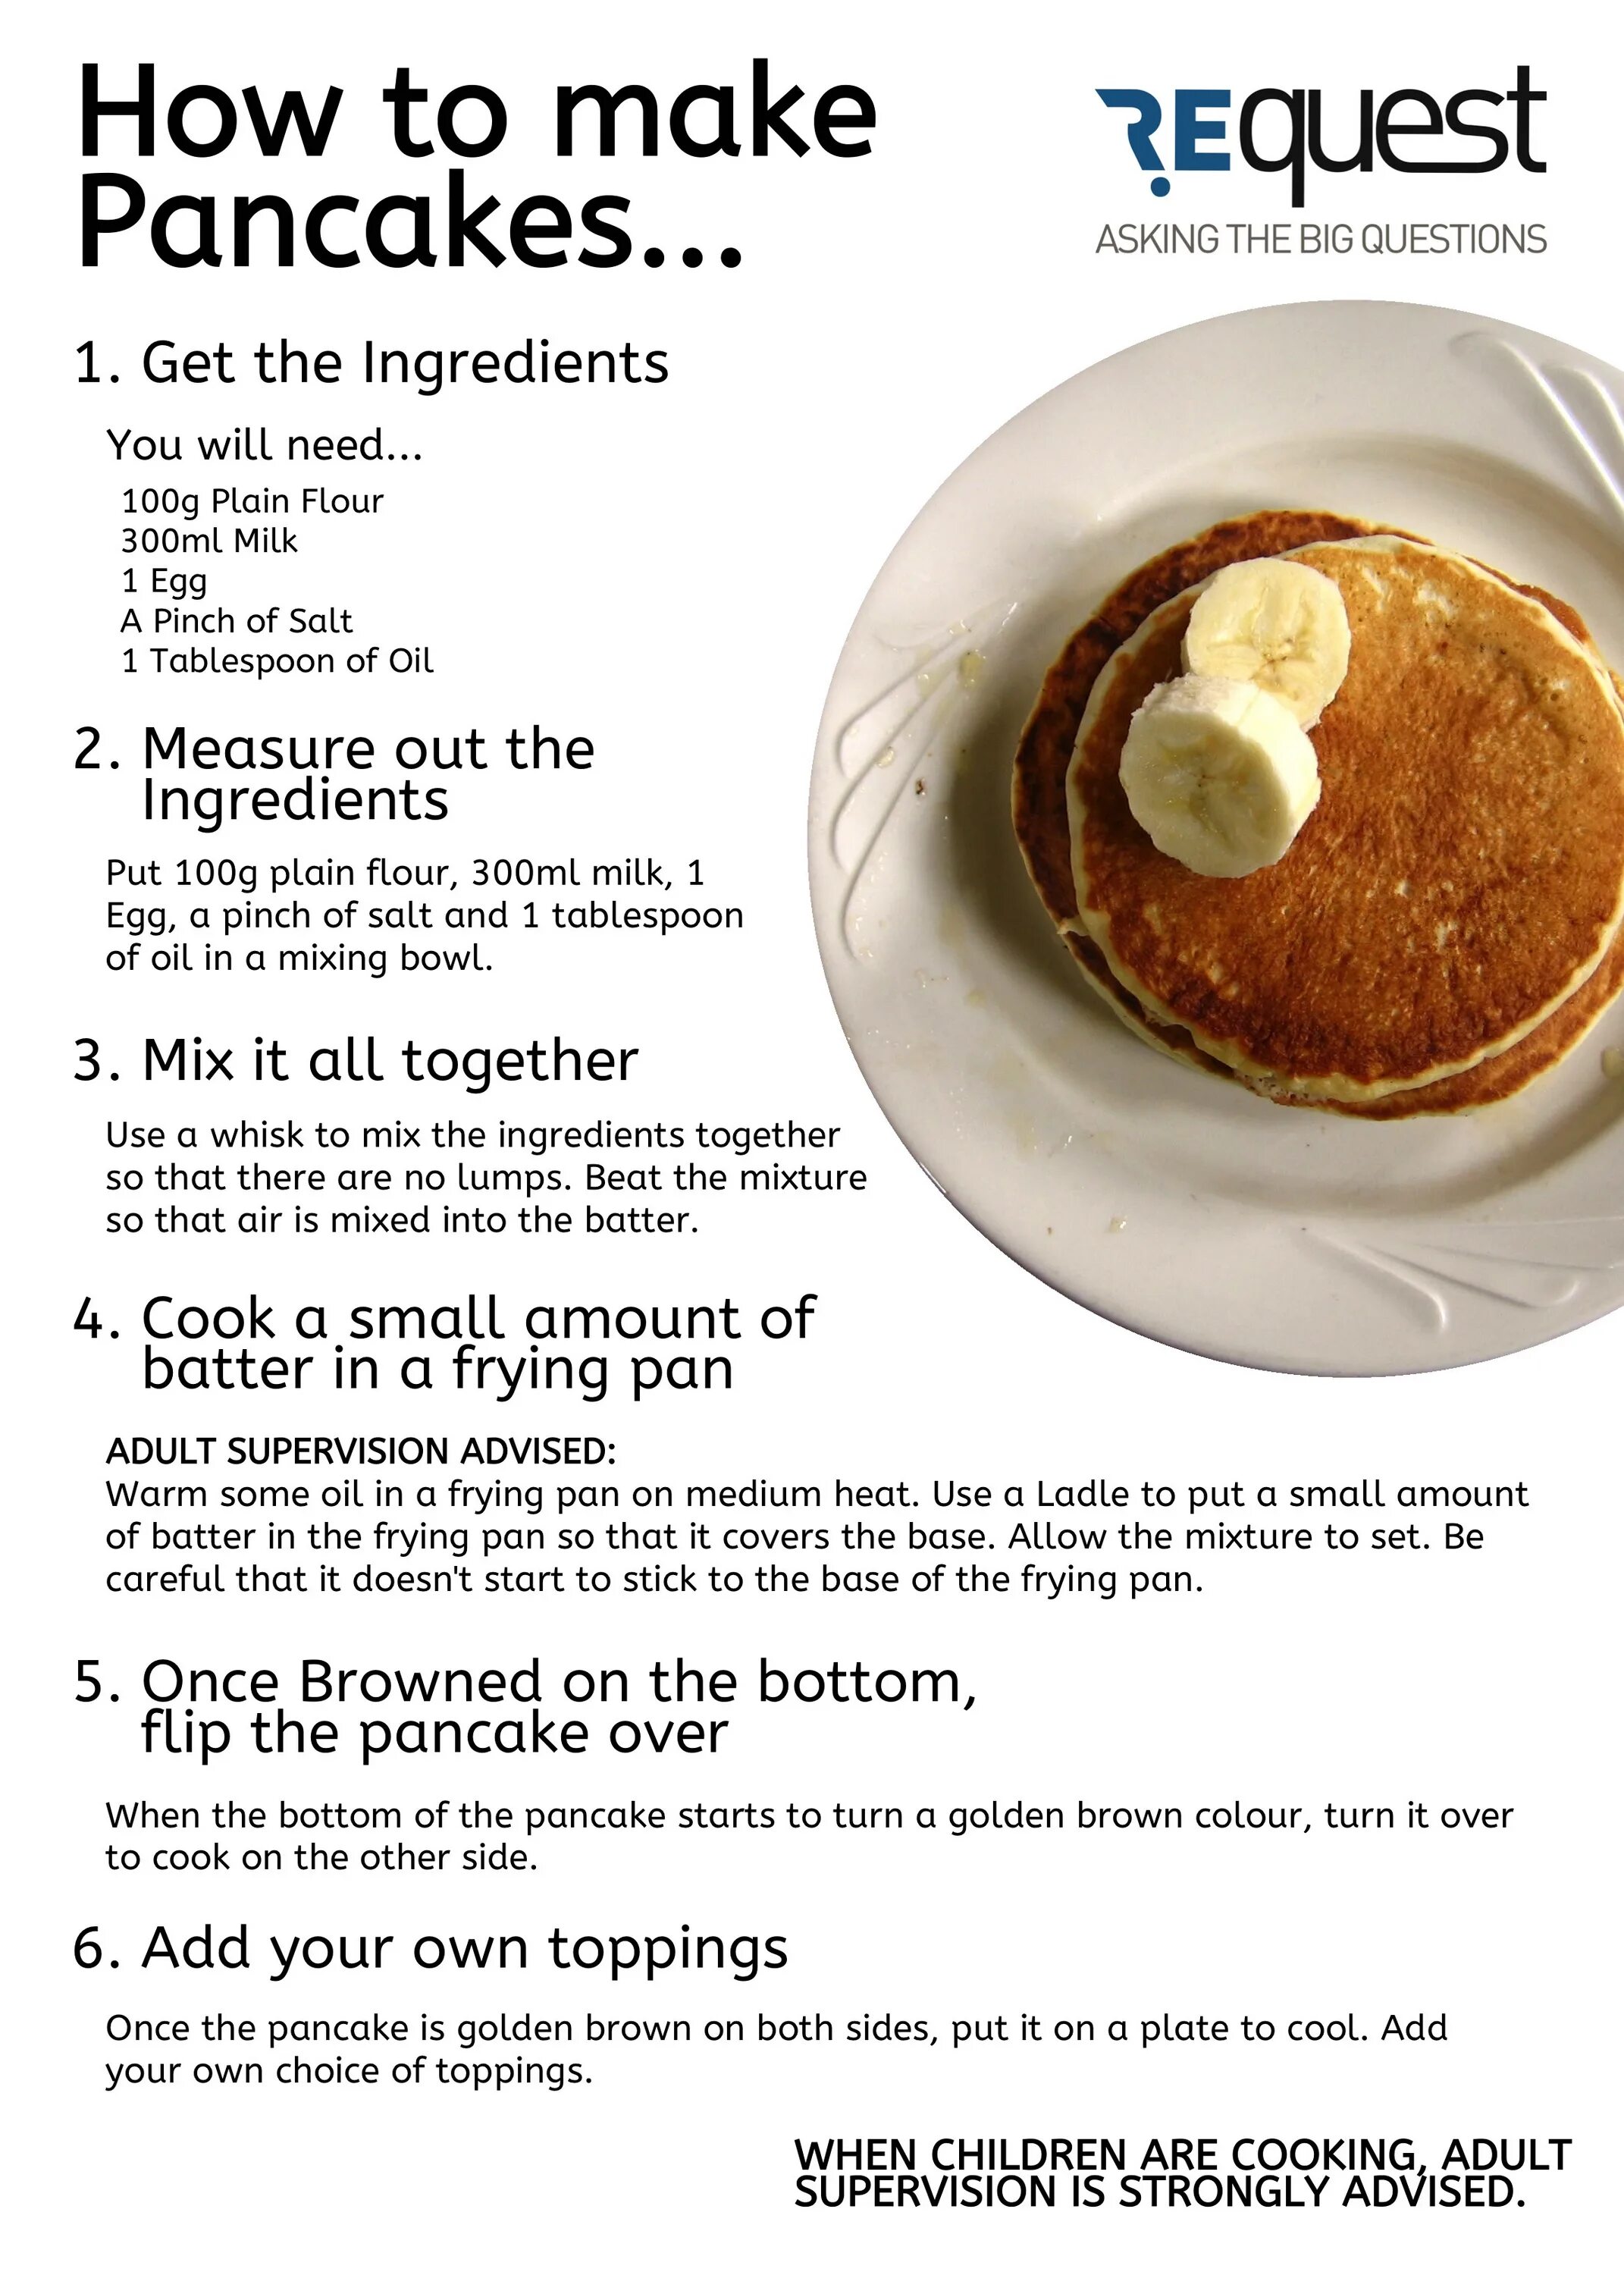 Рецепт блинов на английском кратко. Блины. How to make Pancakes Worksheet. Рецепт блинов на английском. Pancakes Recipe на английском.